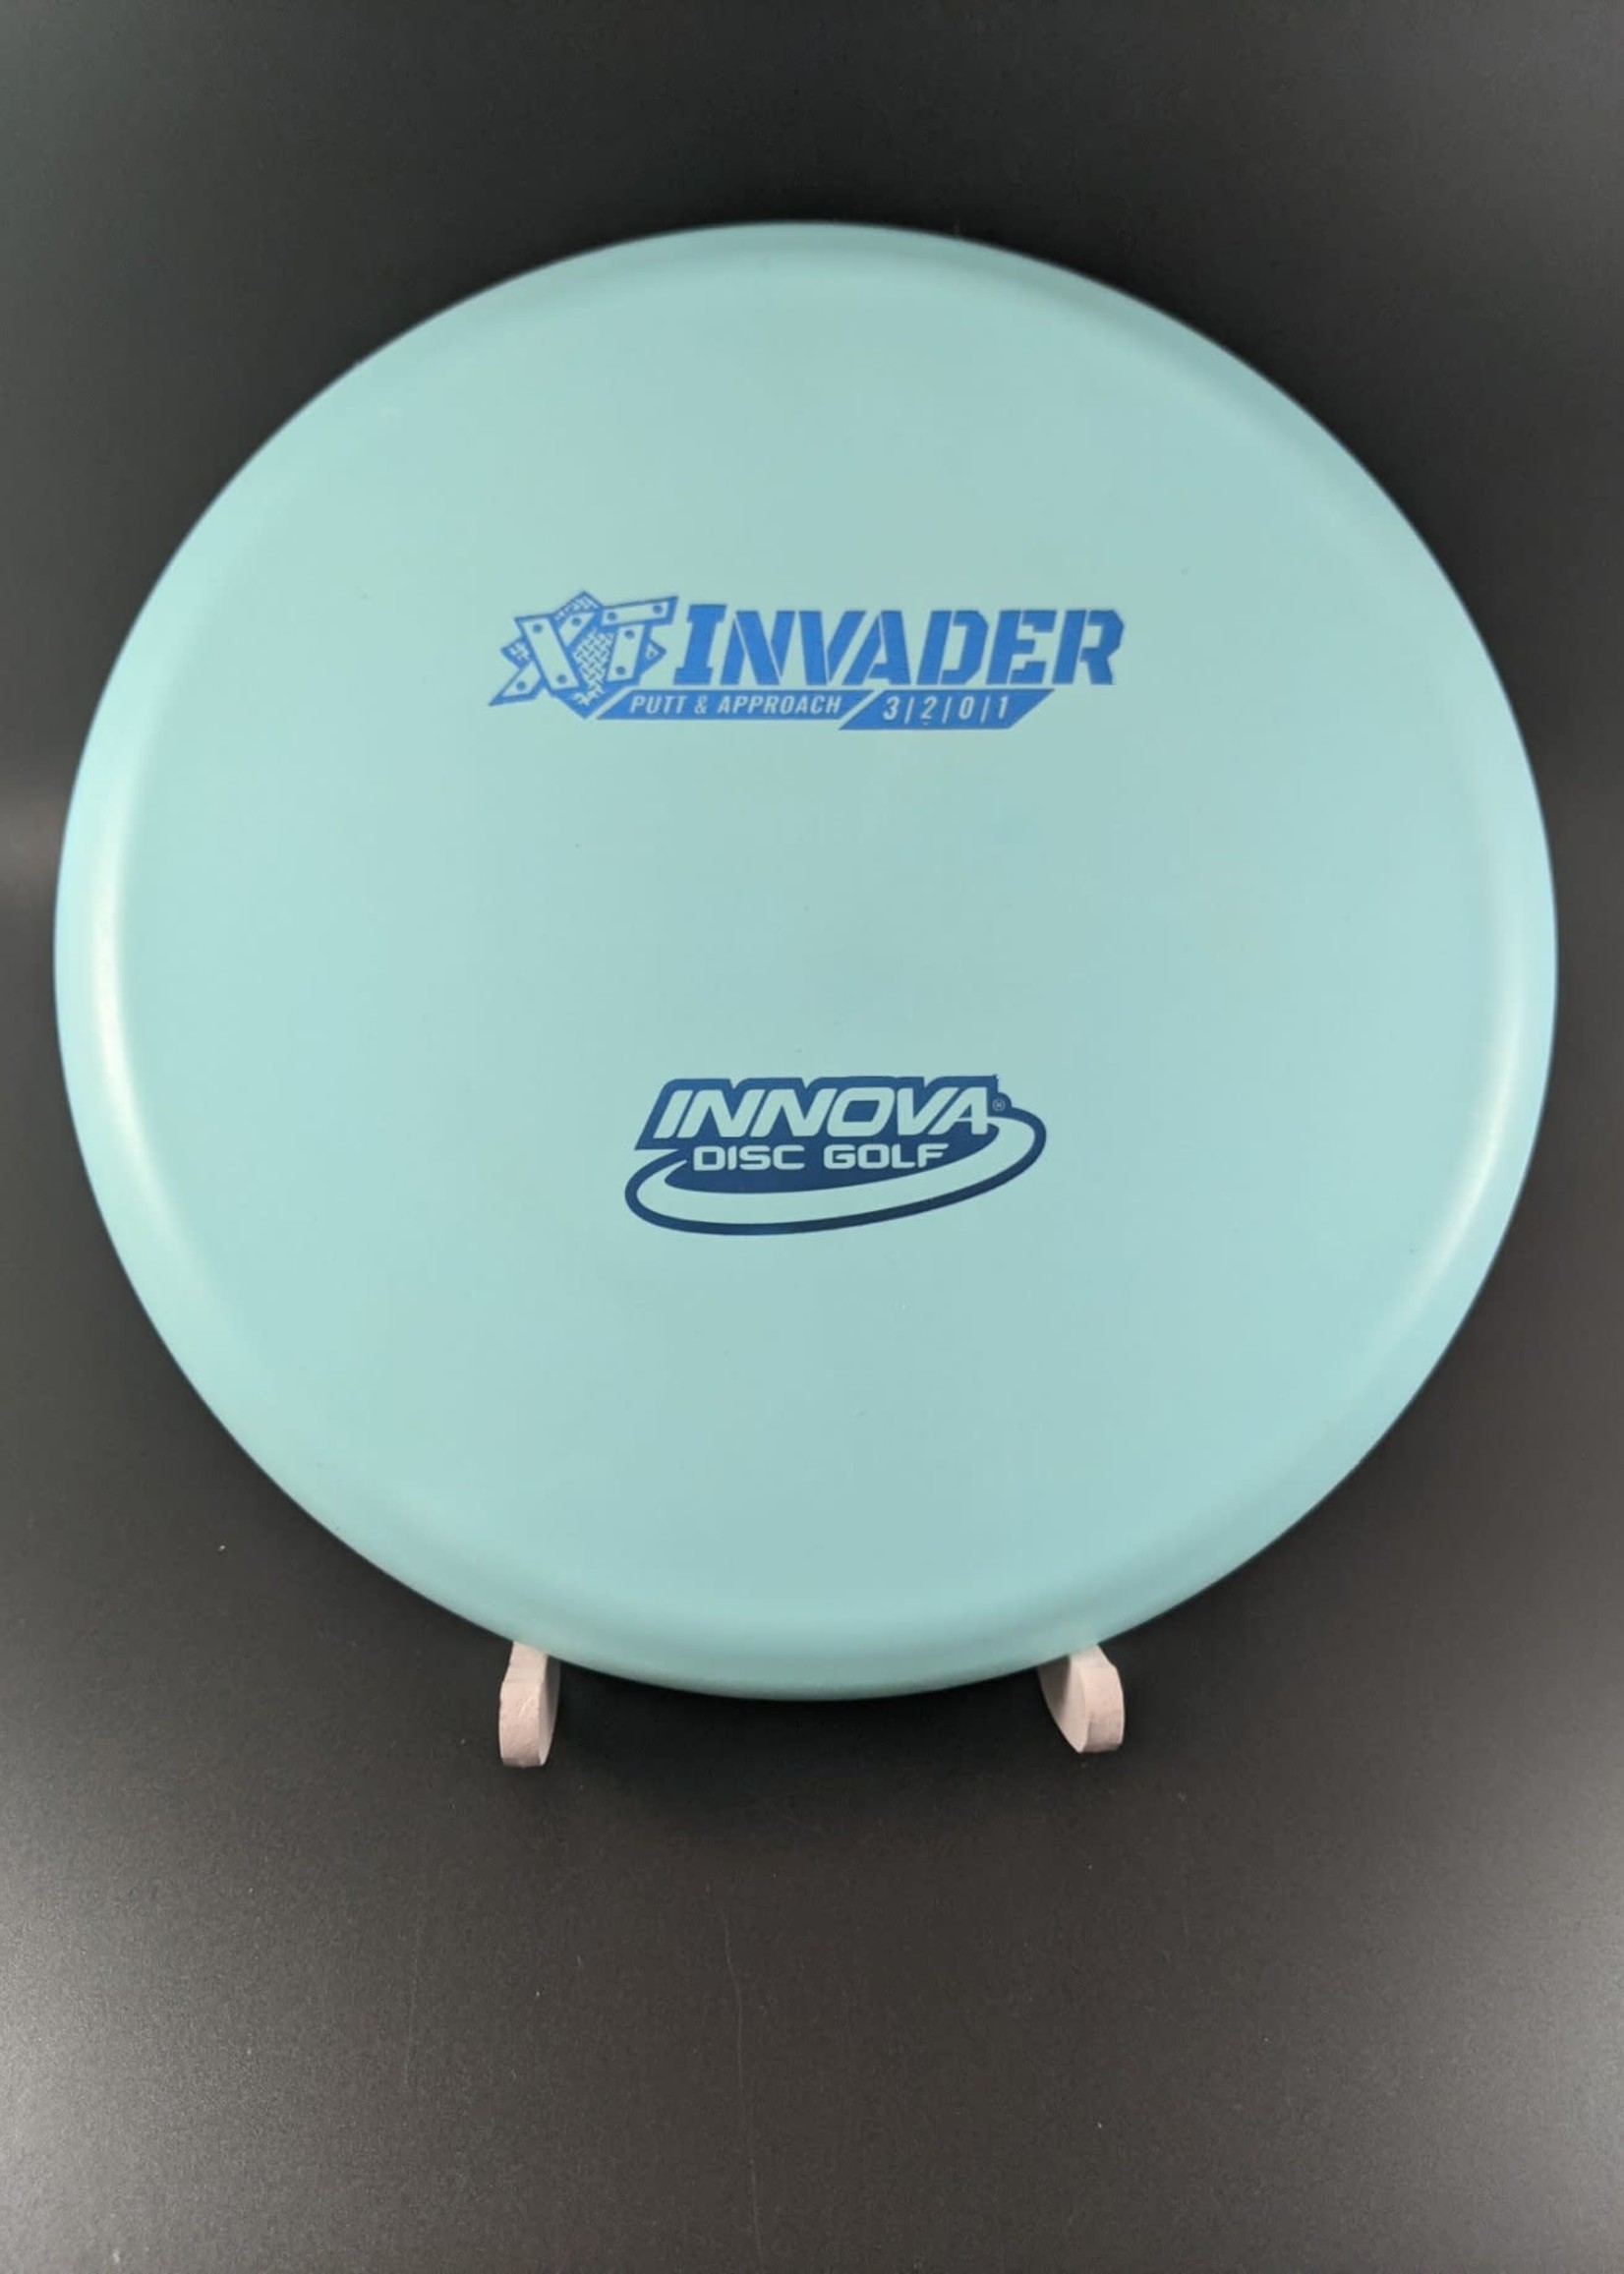 Innova Innova XT Invader